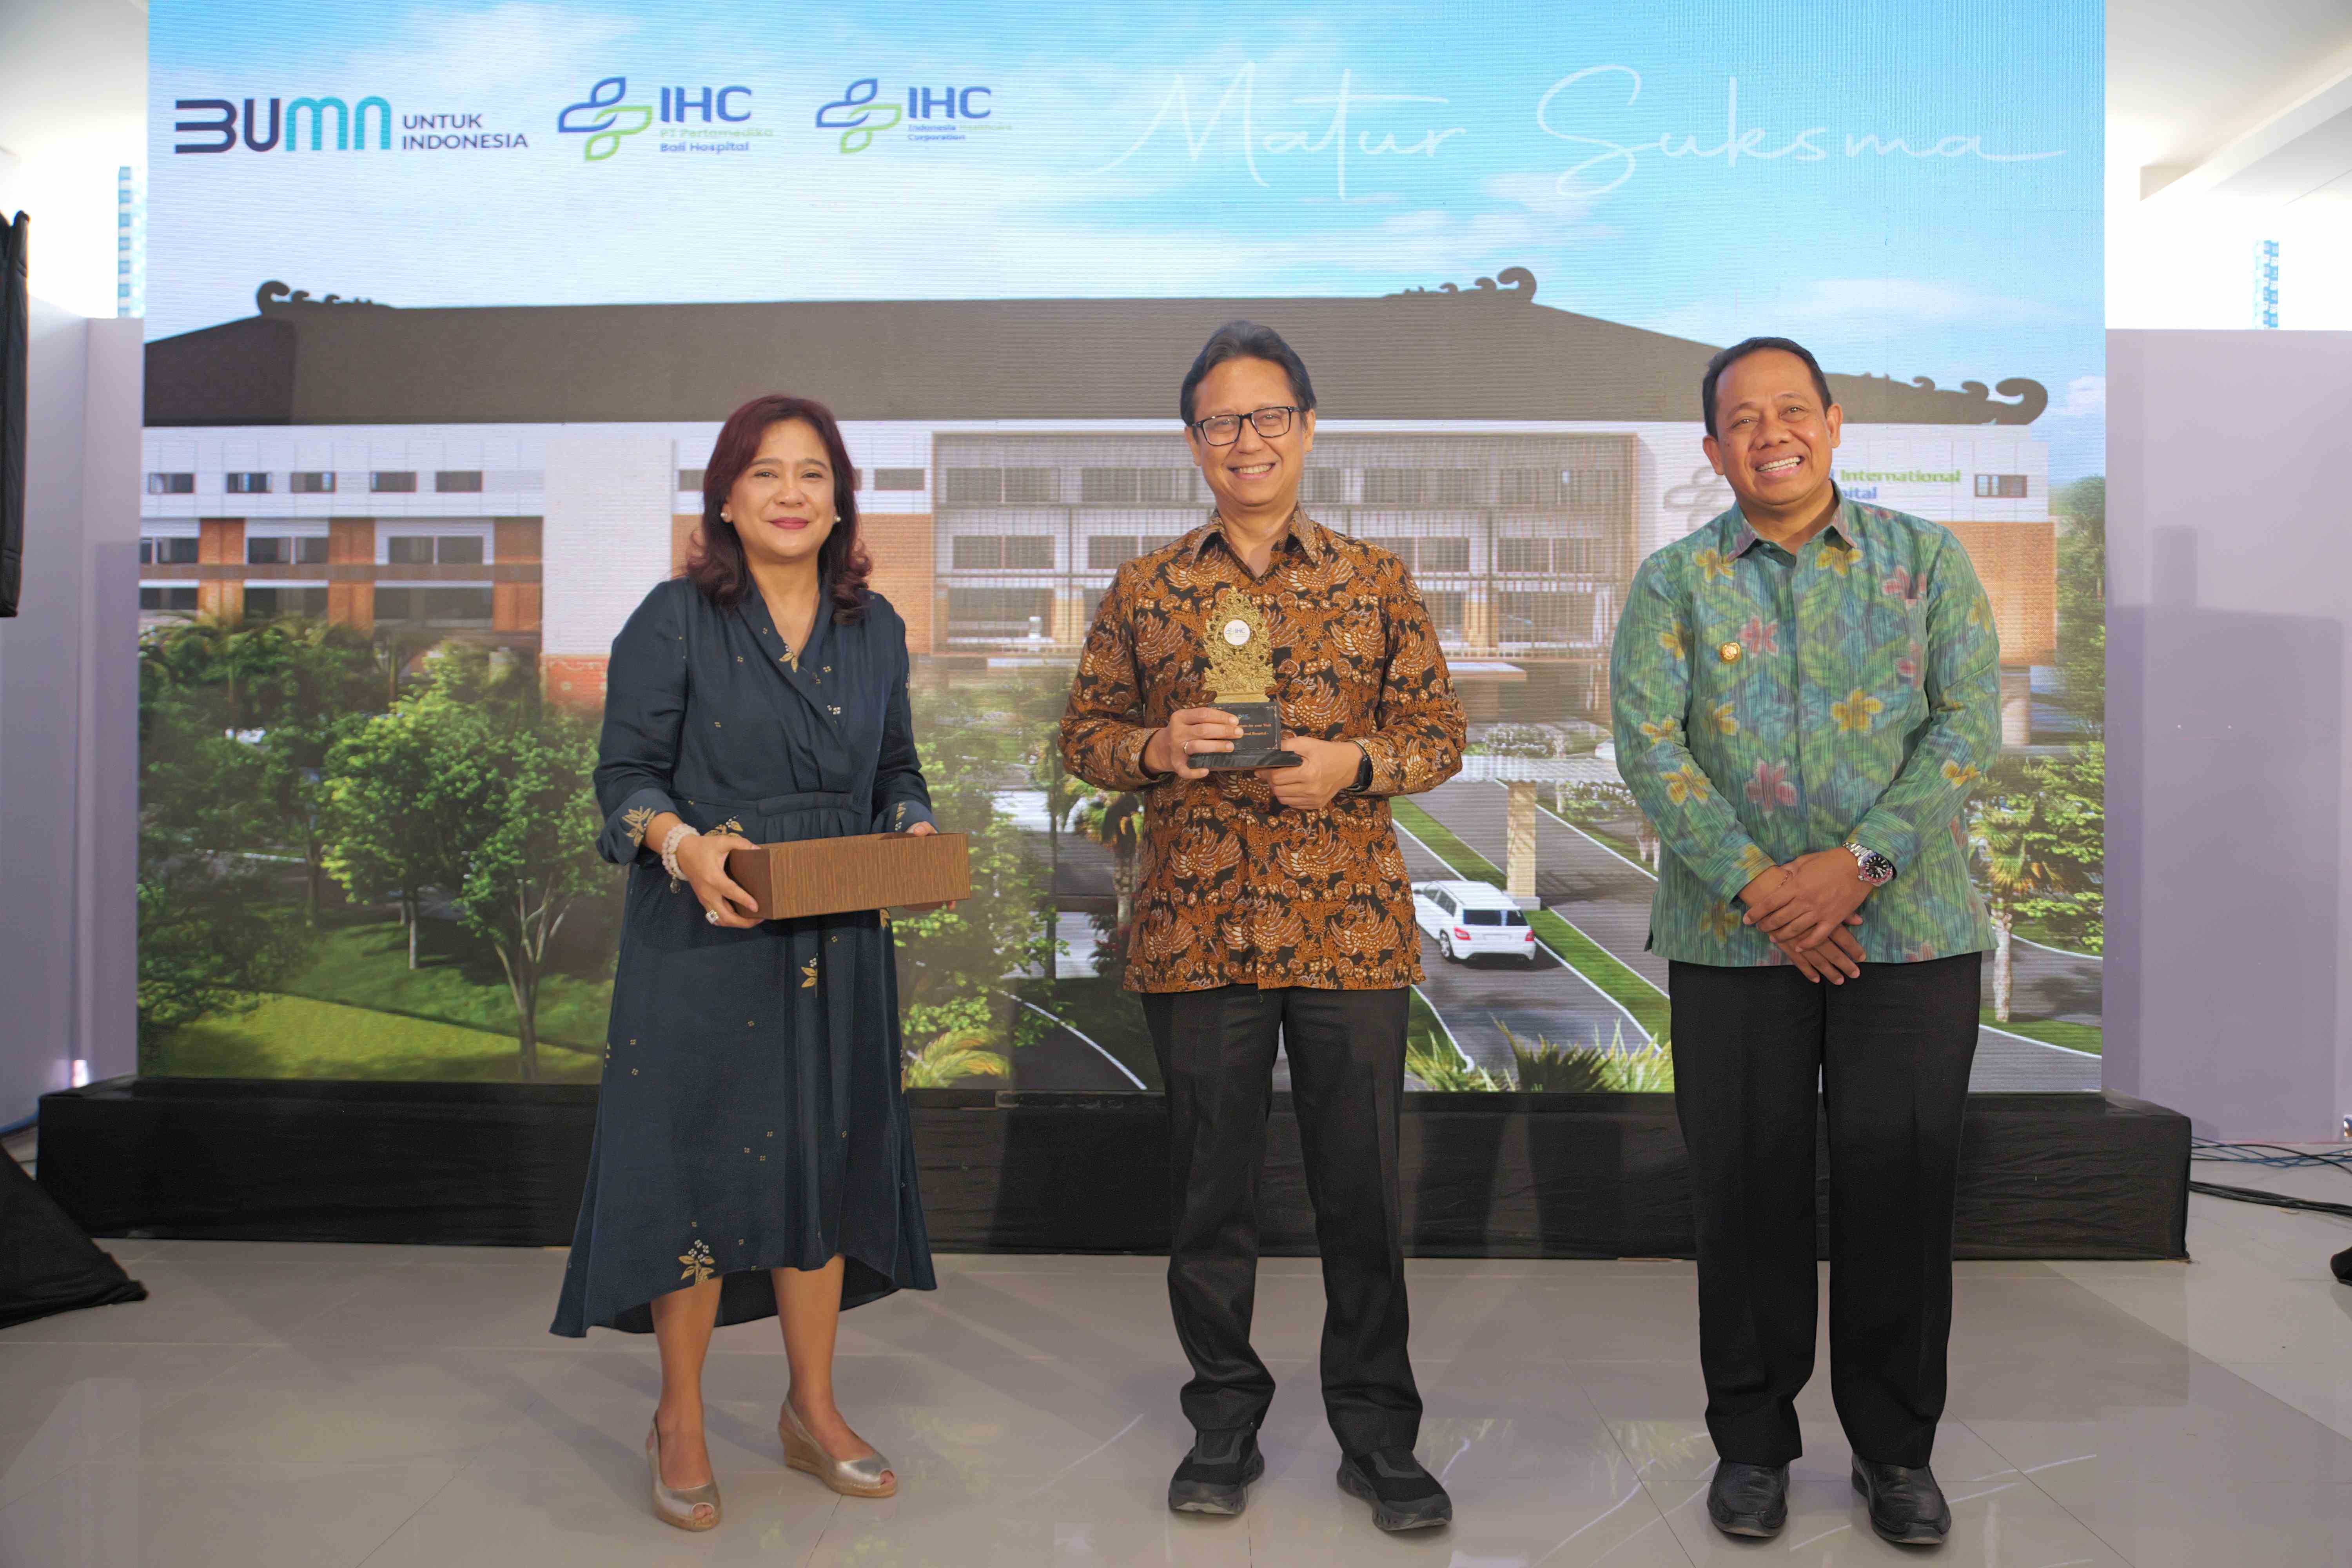 Menteri Kesehatan RI Kunjungi IHC Bali International Hospital, Tinjau 3 Fokus Utama : SDM, Potensi Market, dan Bisnis Model